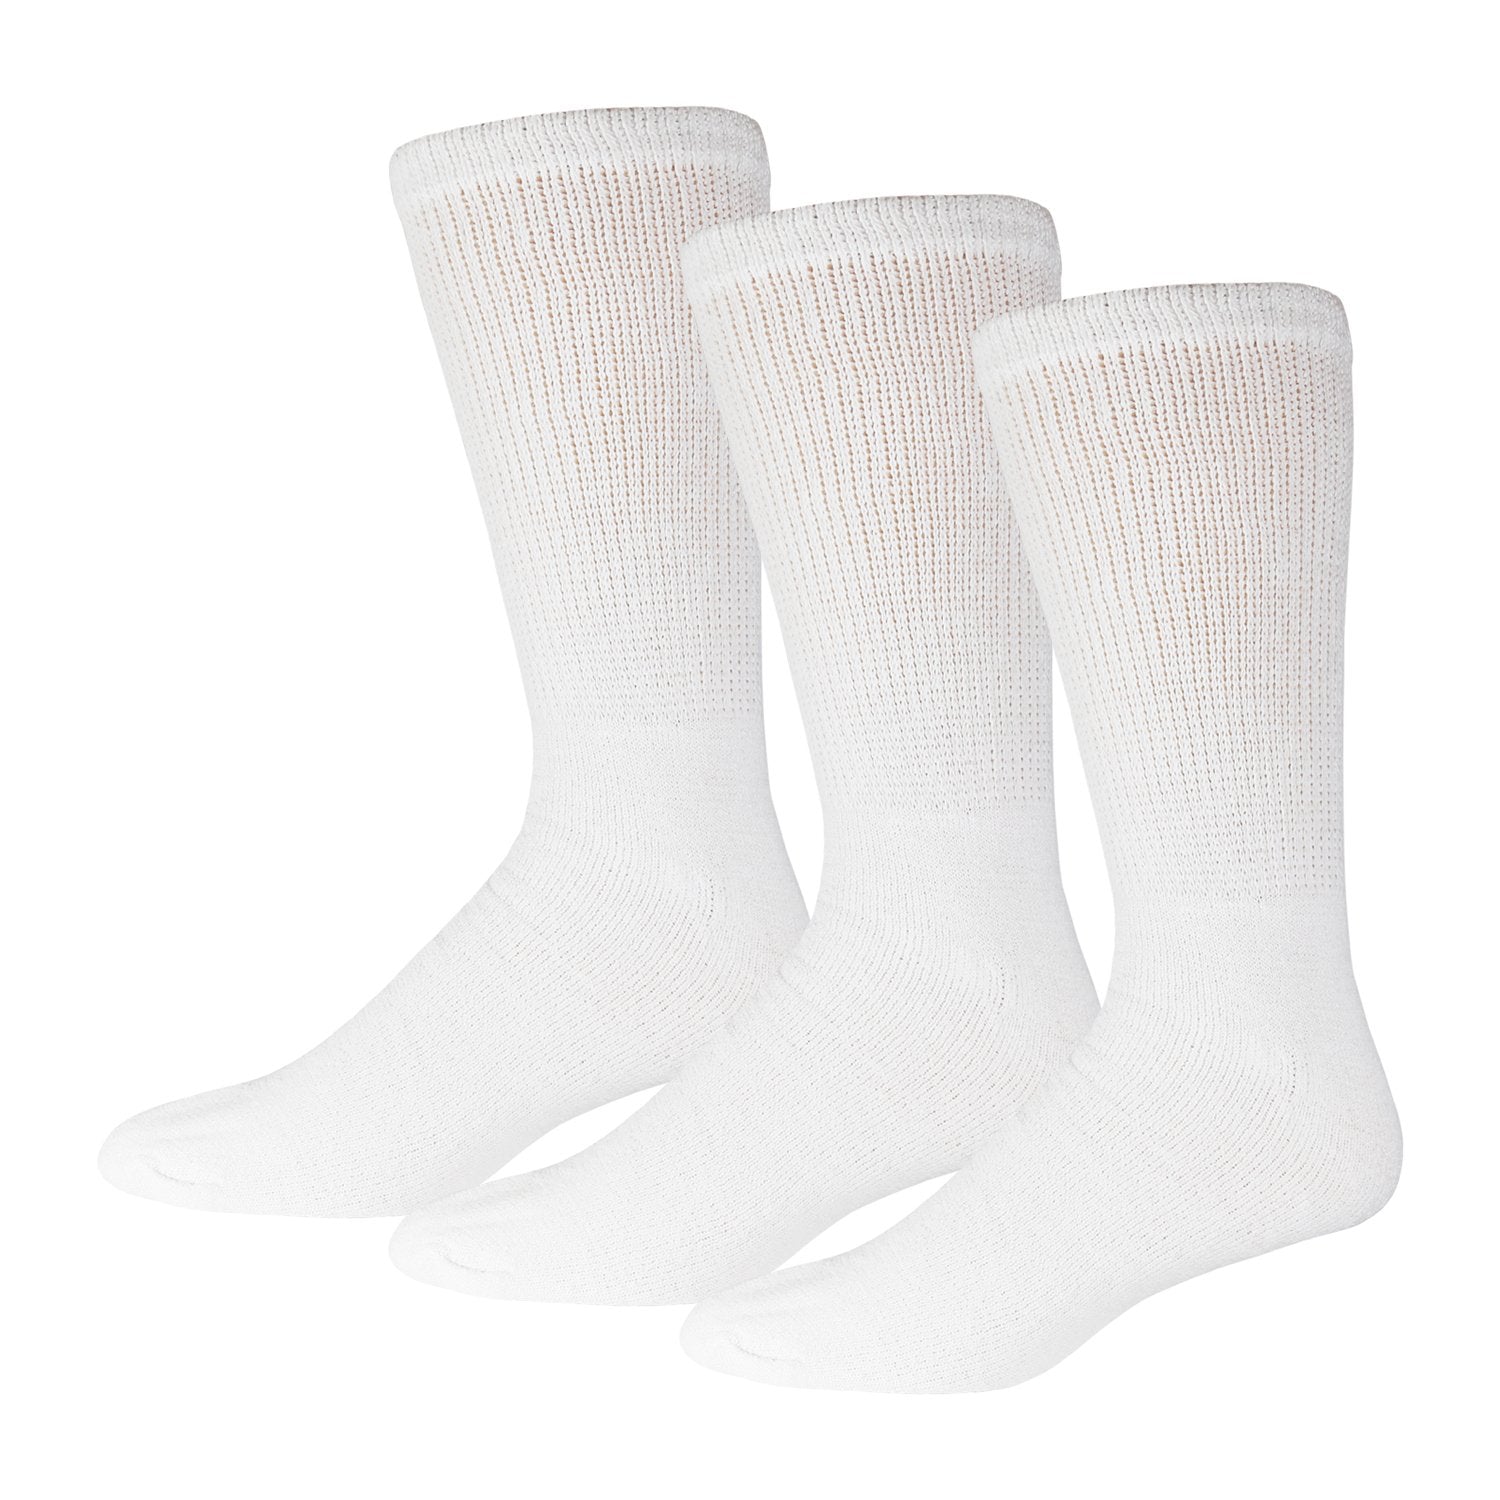 Ladies White Diabetic Socks Of Crew Length 3 Pack